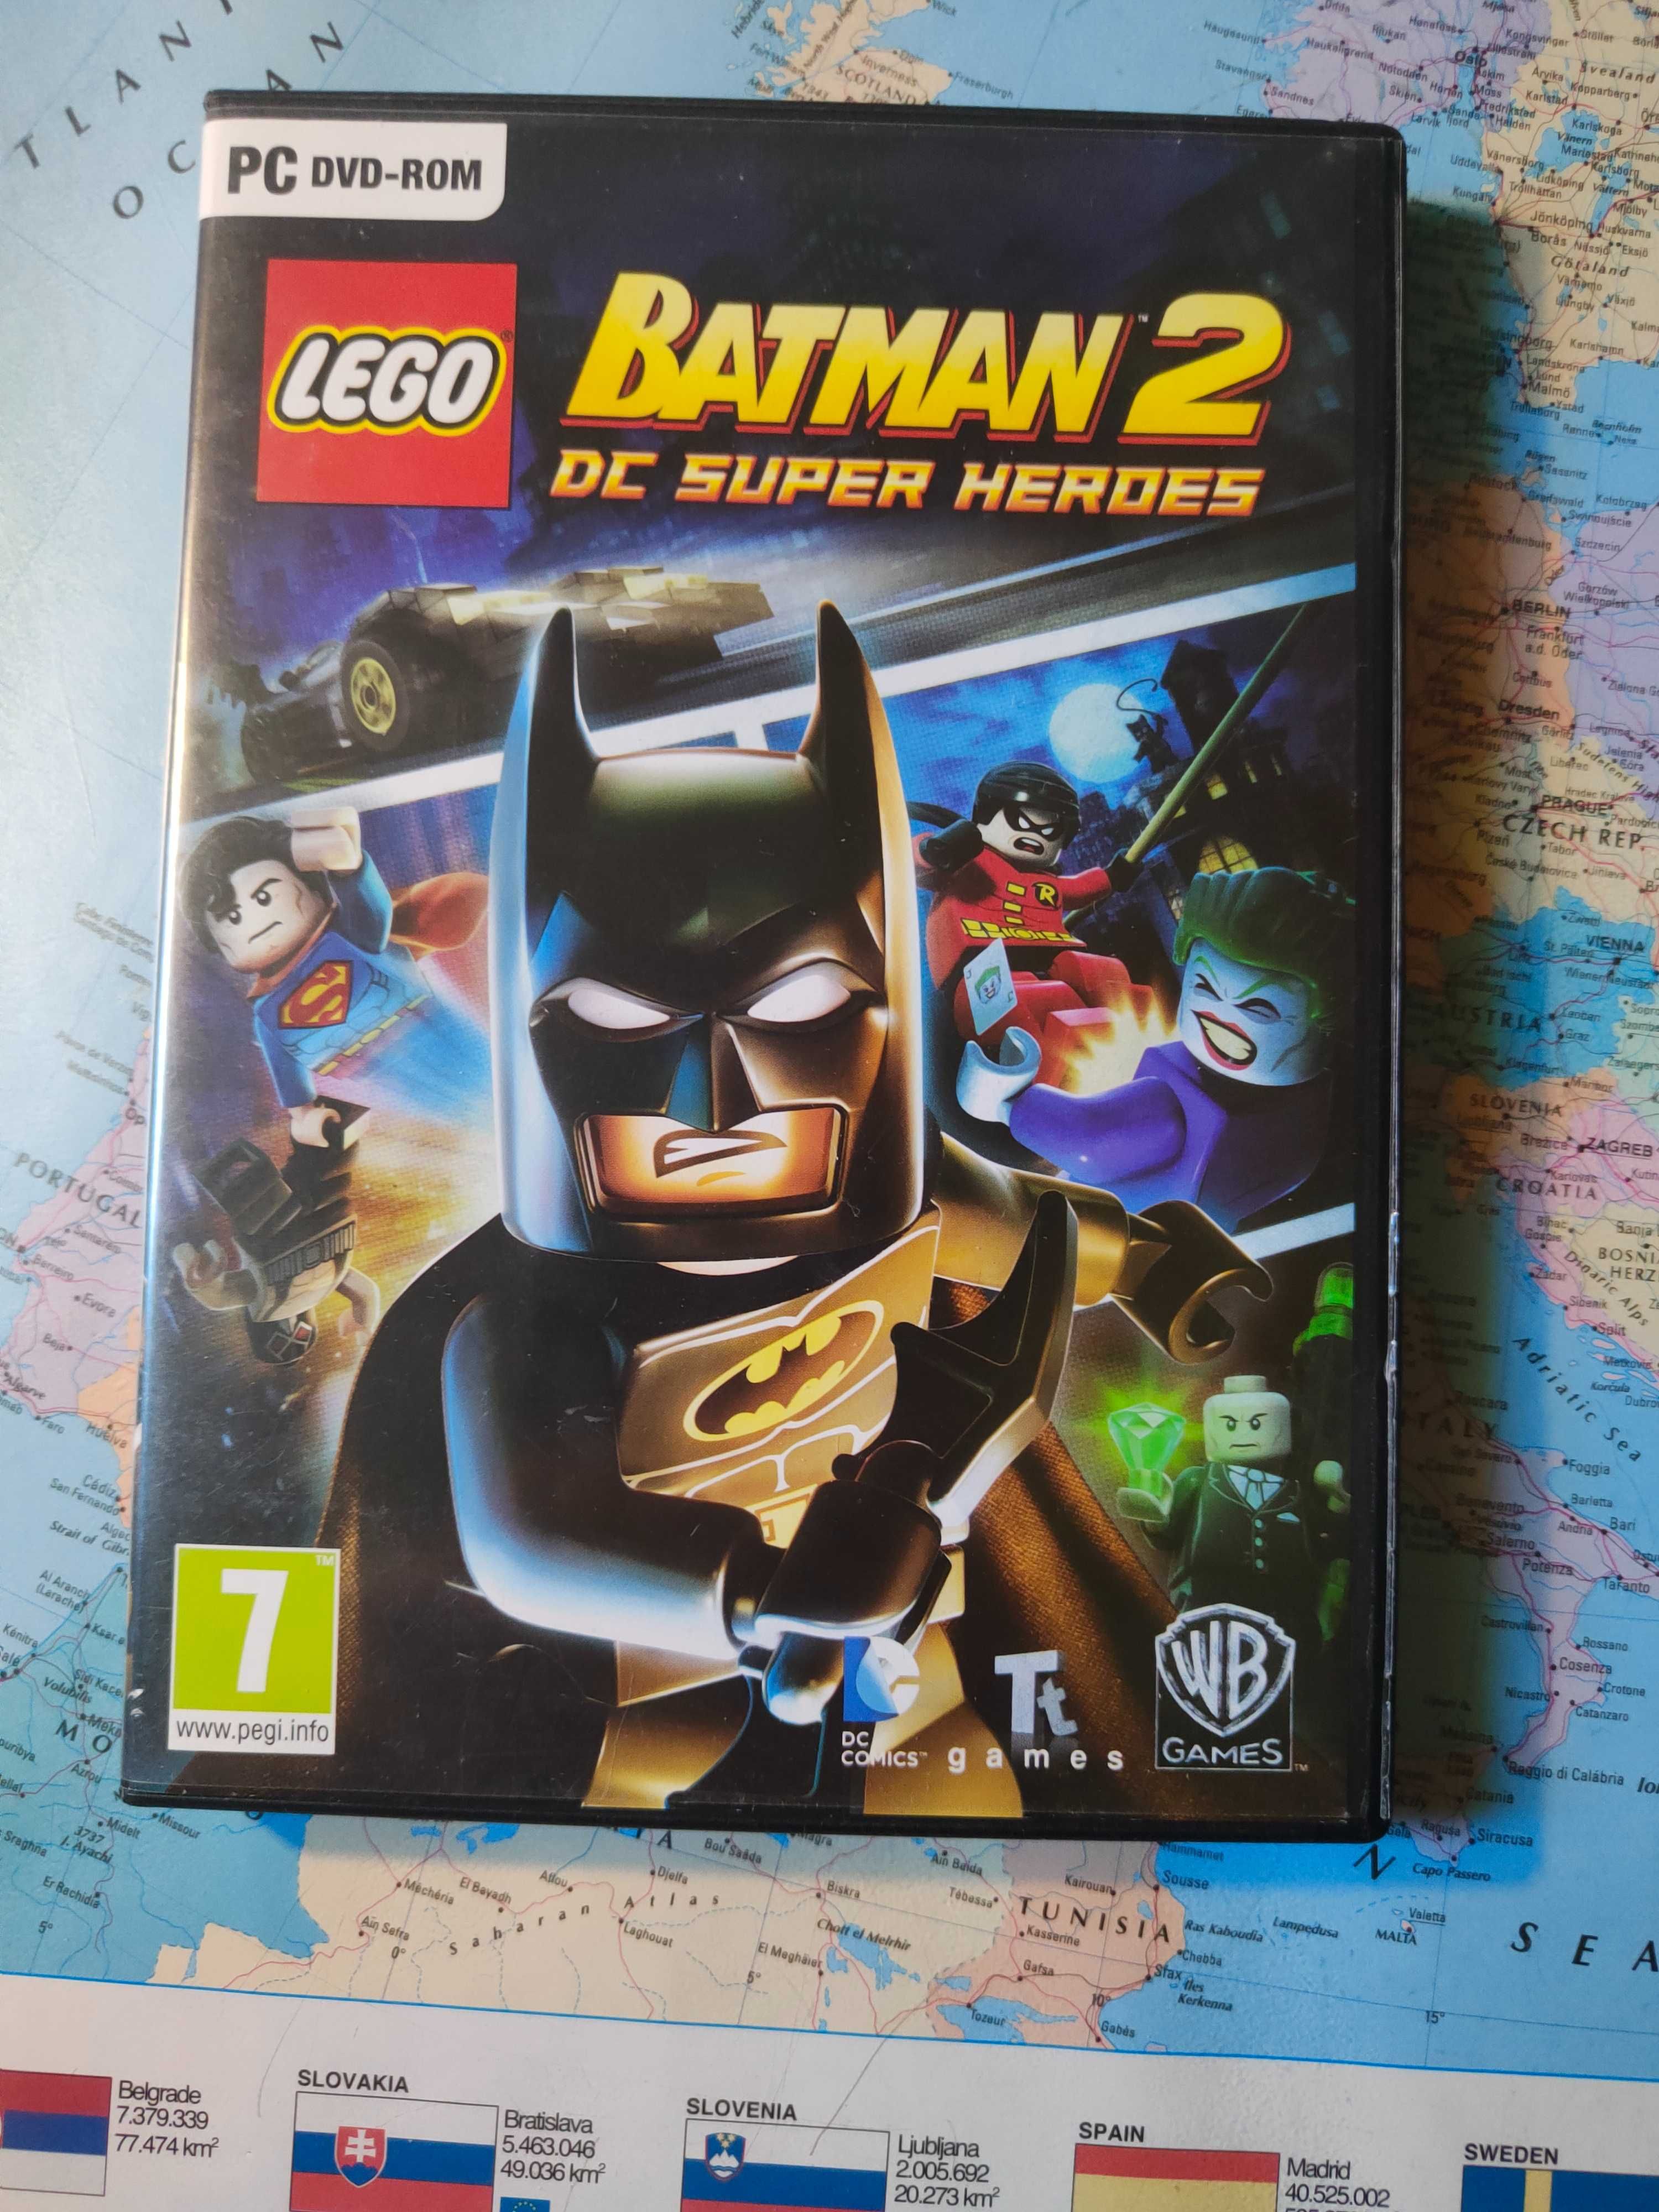 Lego Batman 2 Dc Super Heroes